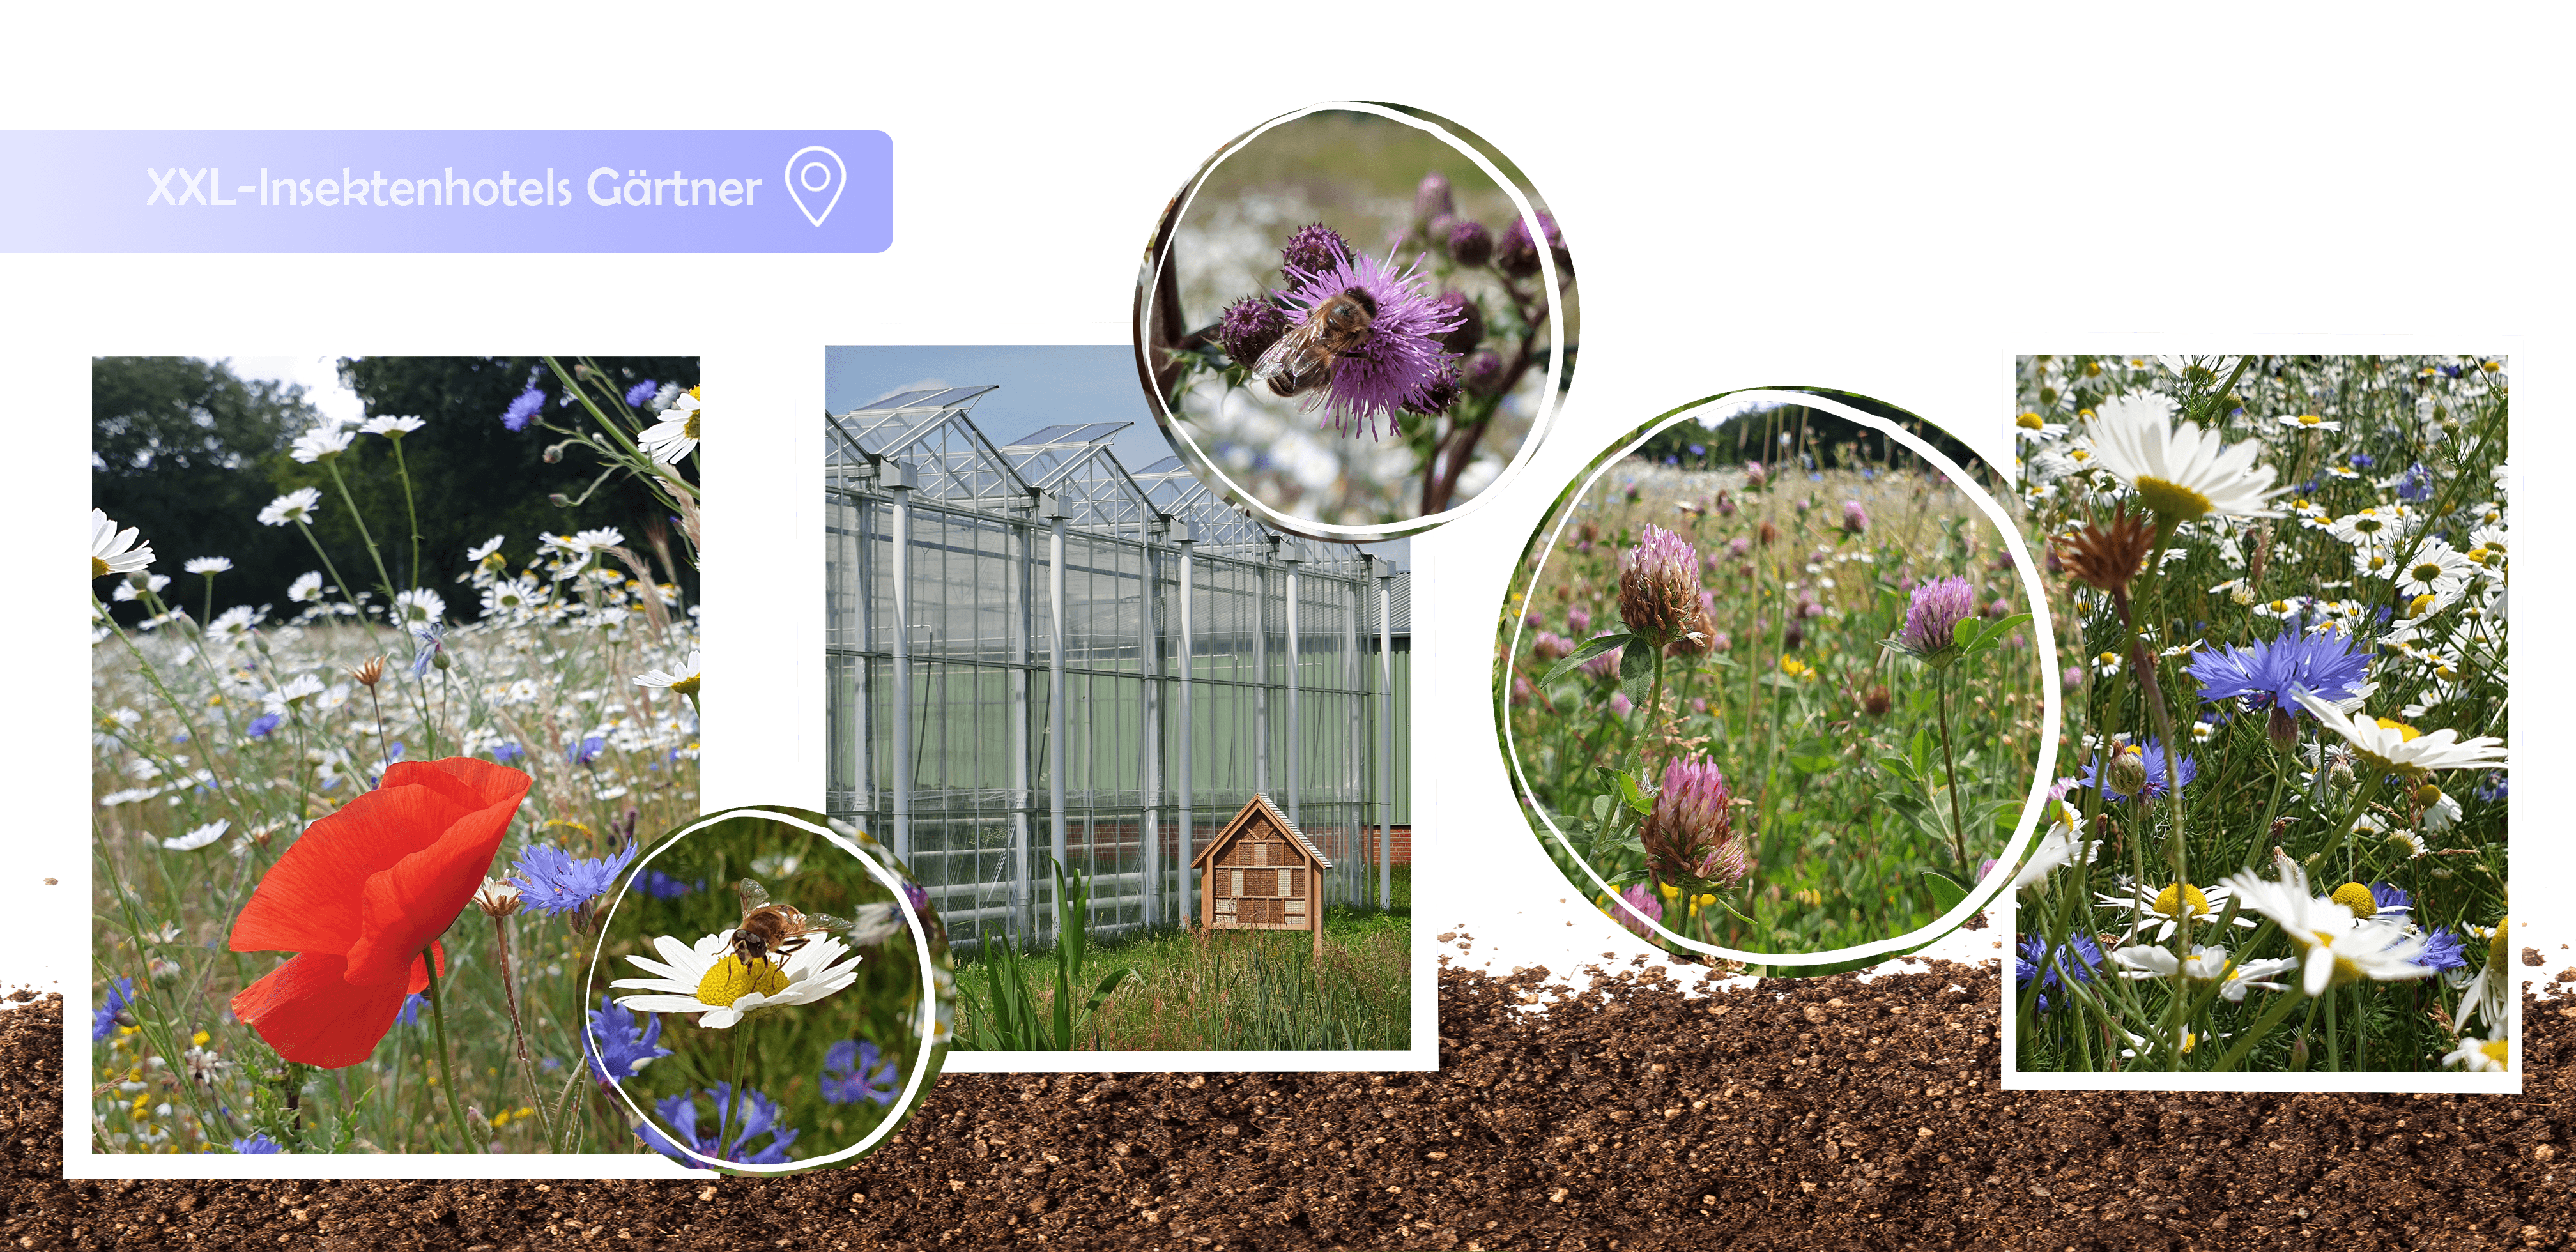 Insektenhotel, Wildblumen, Gärtner, Gartenbauzentrale, GBZ, GBZ Papenburg, Papenburg, Nachhaltigkeit, nachhaltig, Blühwiese, Wildblumenwiese, Insektenhotel, regional, Naturschutz, Umweltschutz, Umweltinitiative